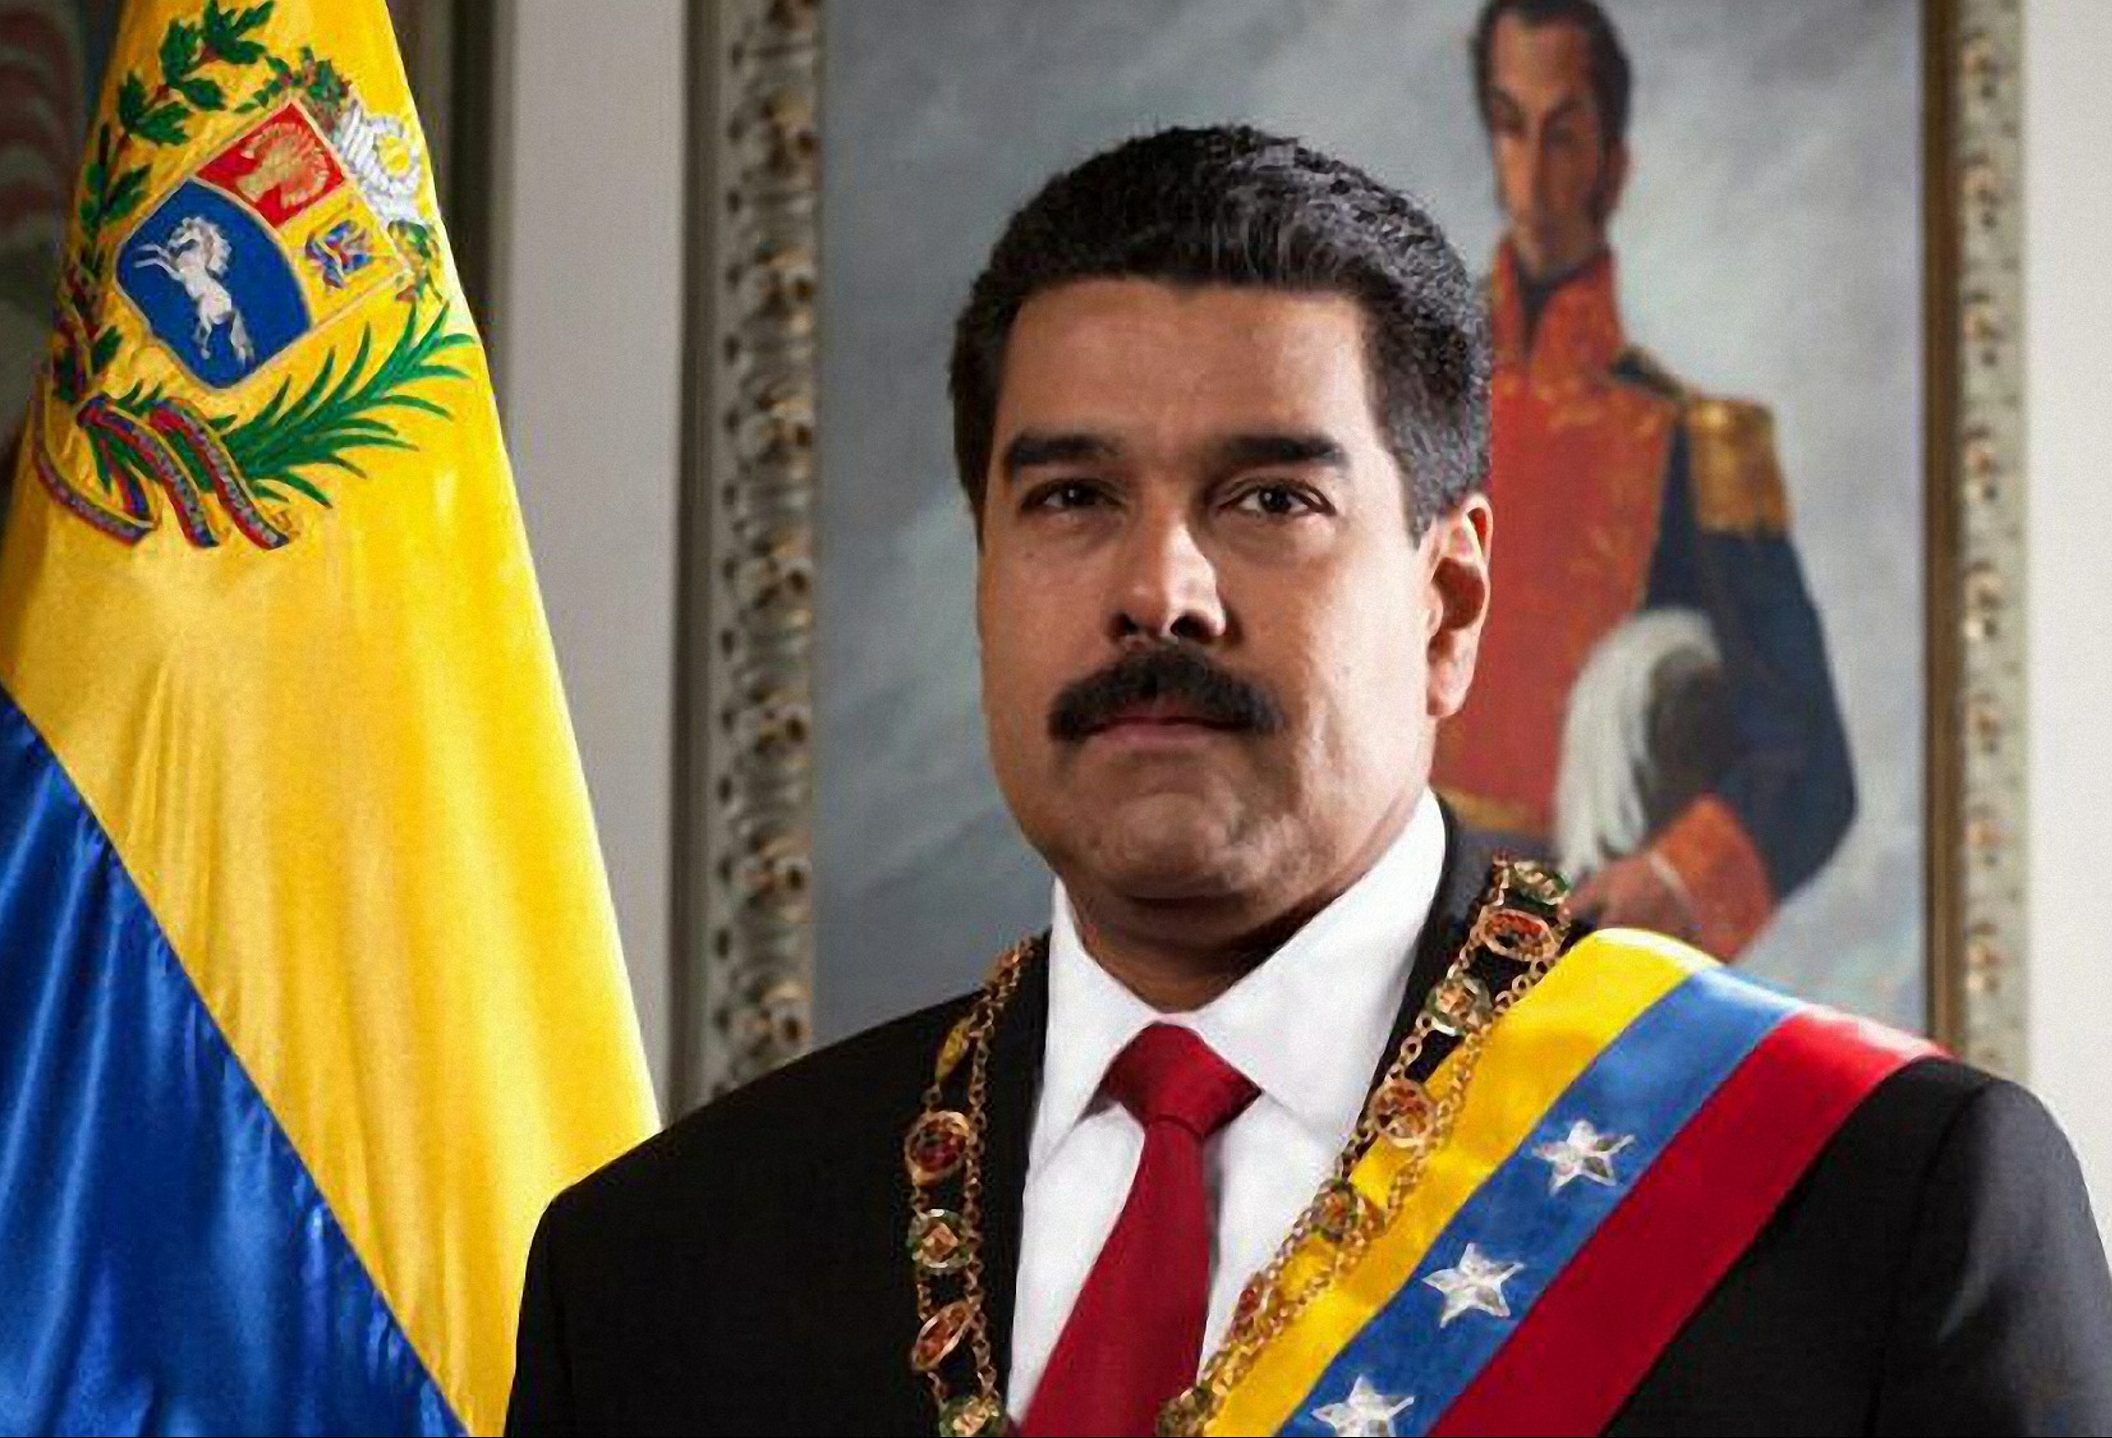 Es “show” y “mensaje de humillación” la ayuda humanitaria: Maduro